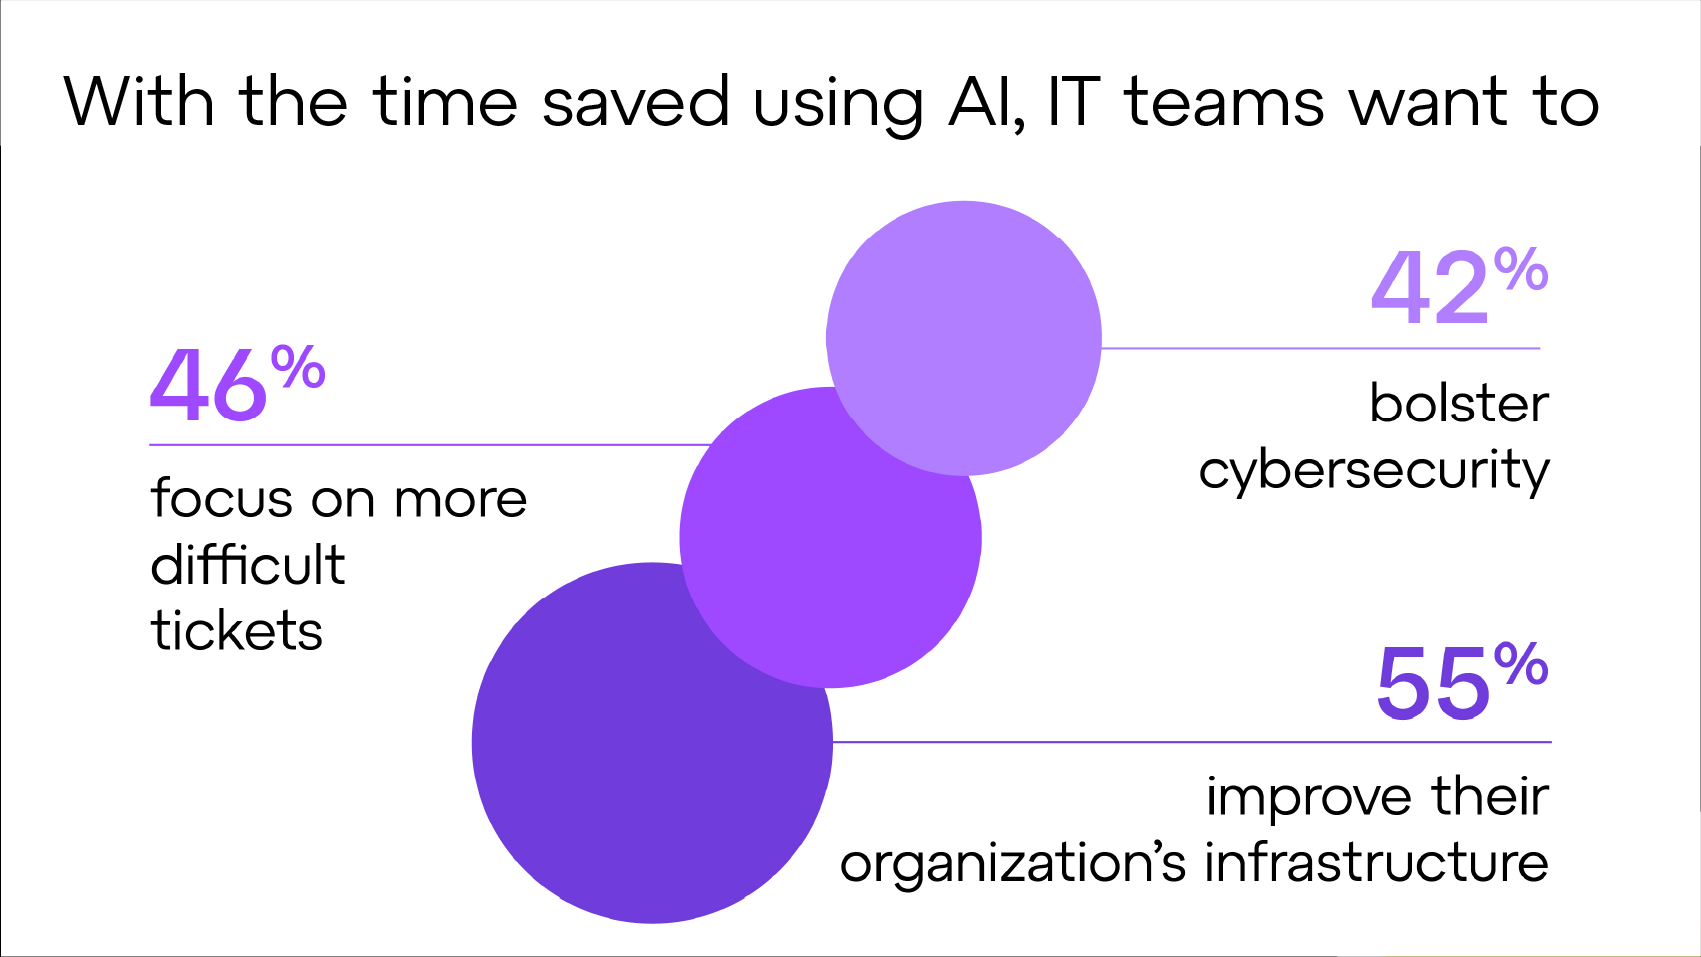 Con el tiempo que ahorran utilizando la IA, los equipos de TI quieren centrarse en tickets más complicados, reforzar la ciberseguridad y mejorar la infraestructura de su organización.